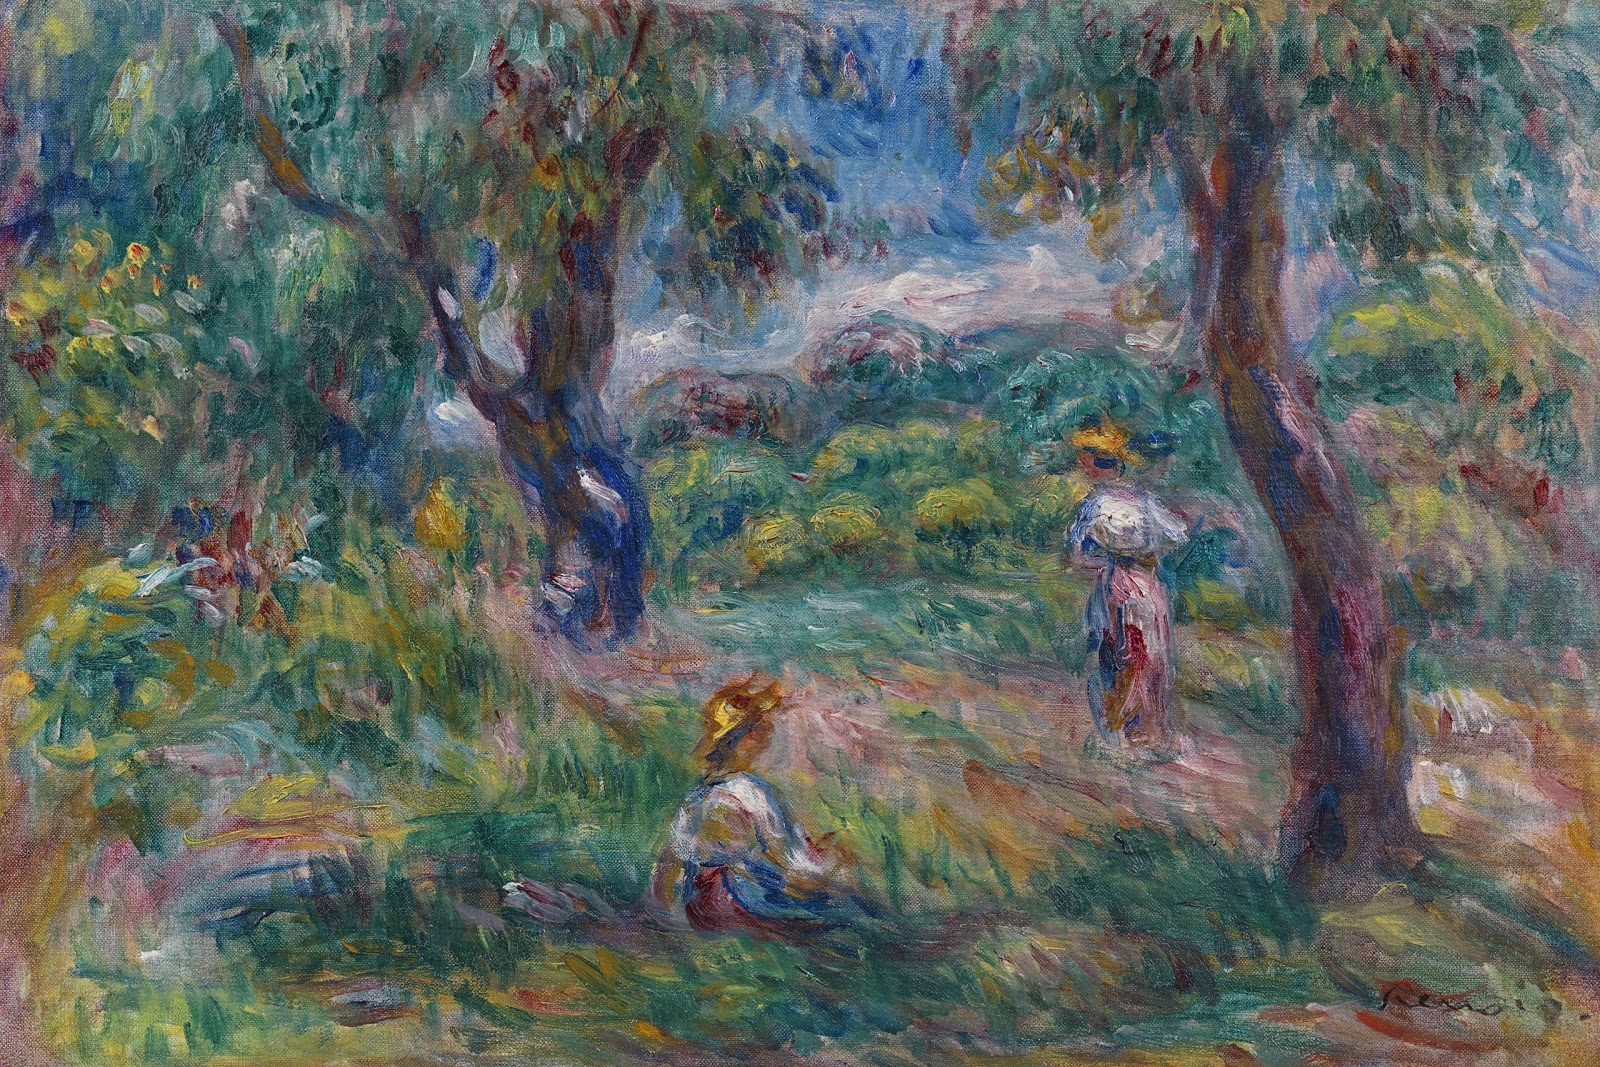 Pierre+Auguste+Renoir-1841-1-19 (730).jpg